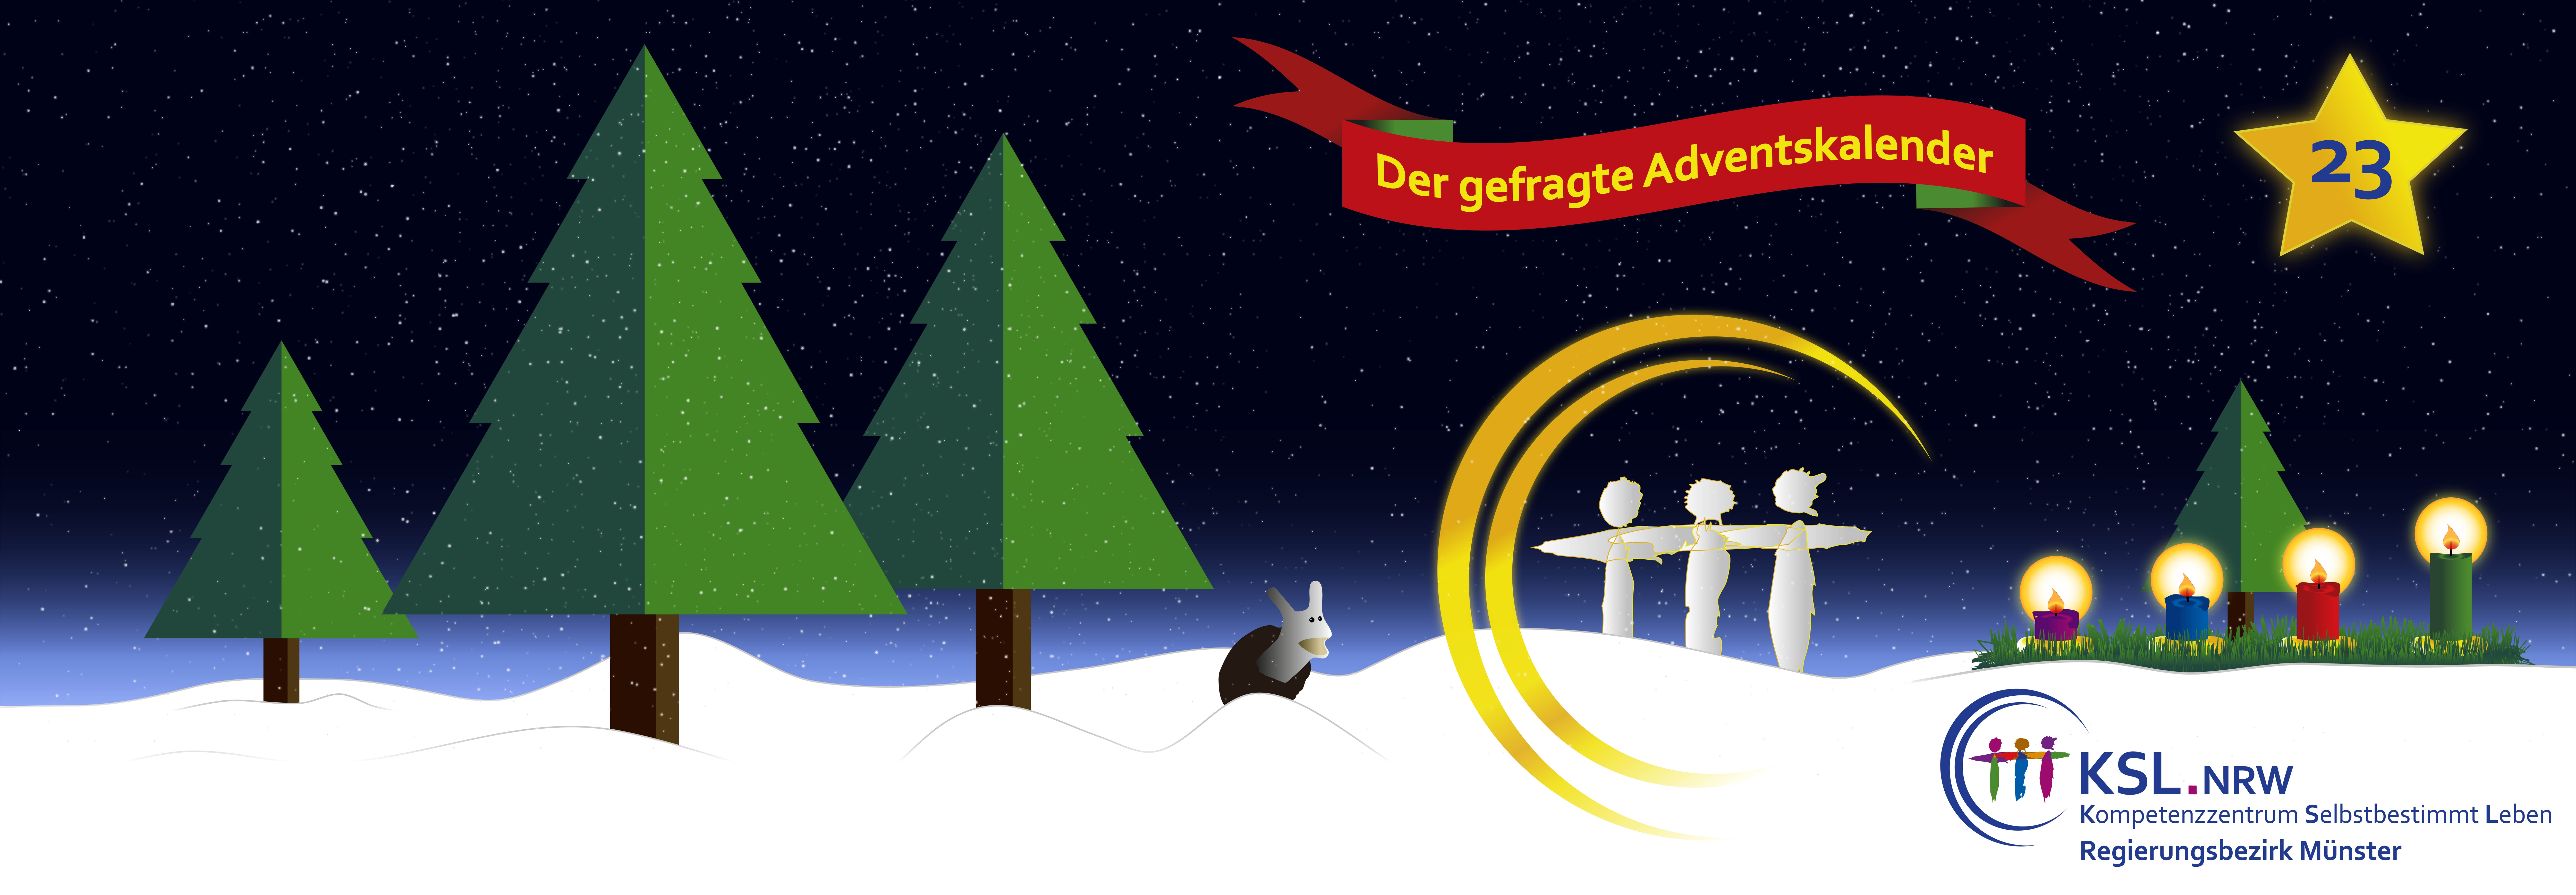 Der gefragte Adventskalender - KSL Münster - weihnachtlicher Hintergrund - vier Tannenbäume - ein Stern mit der Nummer 23 - ein Adventskranz mit vier Kerzen